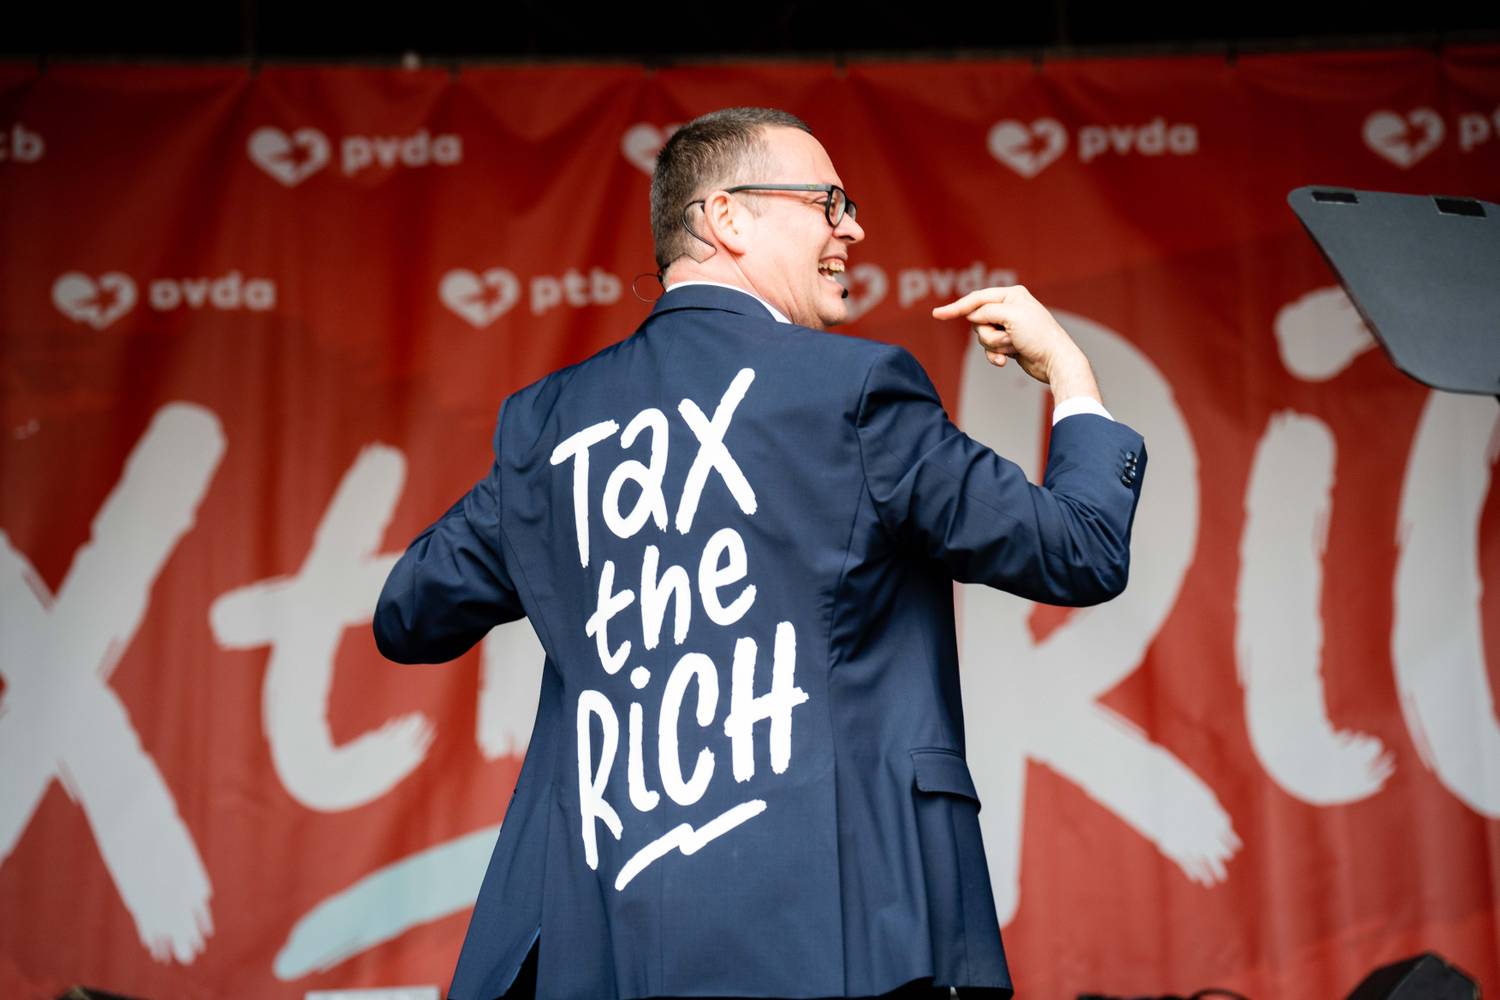 Raoul Hedebouw toont tijdens zijn toespraak zijn vest waar 'tax the rich' op geschreven staat 